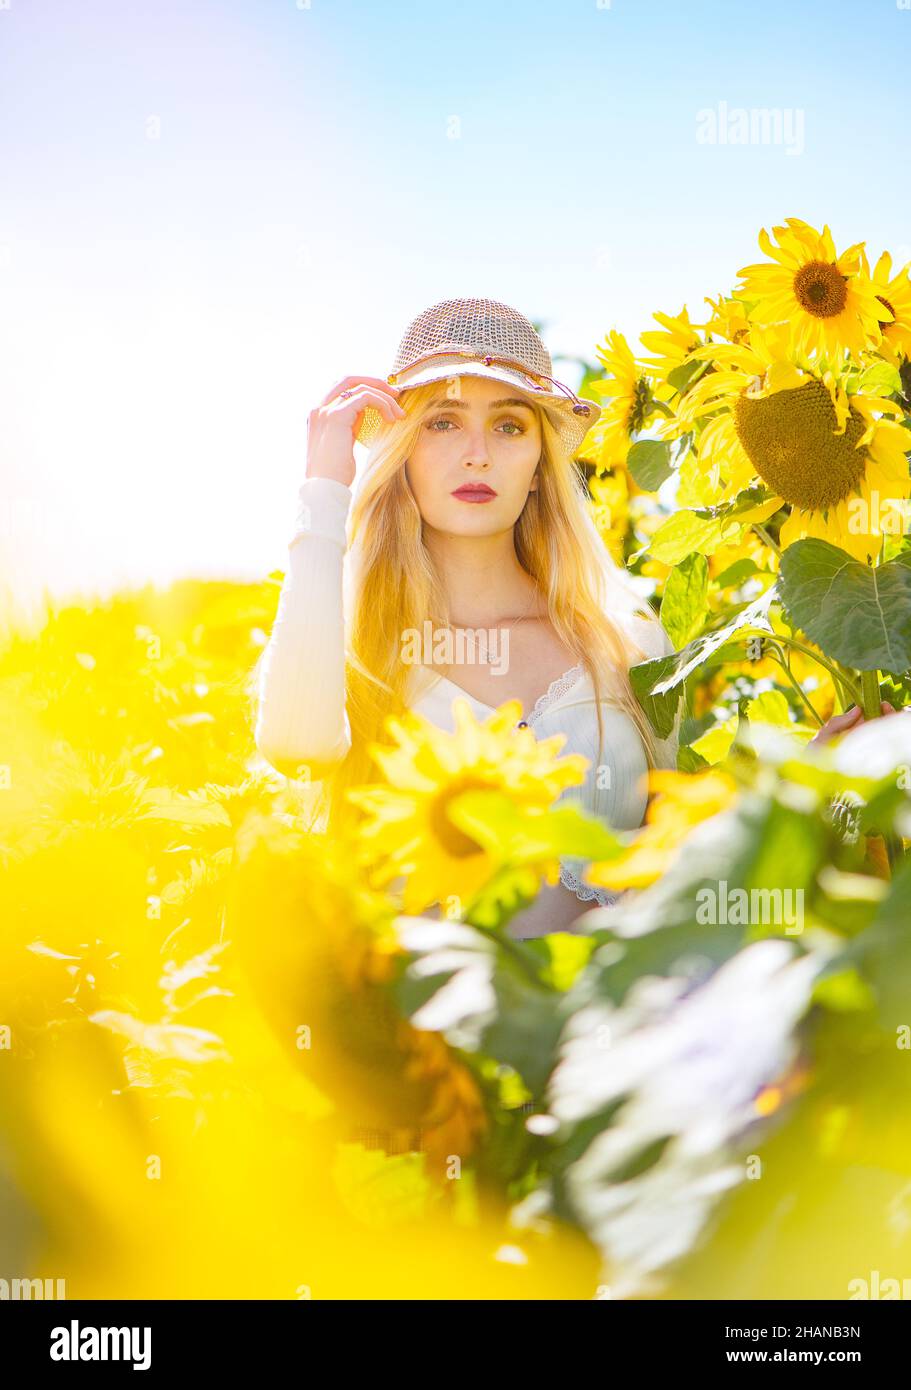 Eine blonde ziemlich langhaarige junge Frau (22 Jahre) in einem Sonnenblumenfeld an einem hellen sonnigen Tag trägt einen Bast Strohhut redaktionellen Lifestyle-Bild. Stockfoto